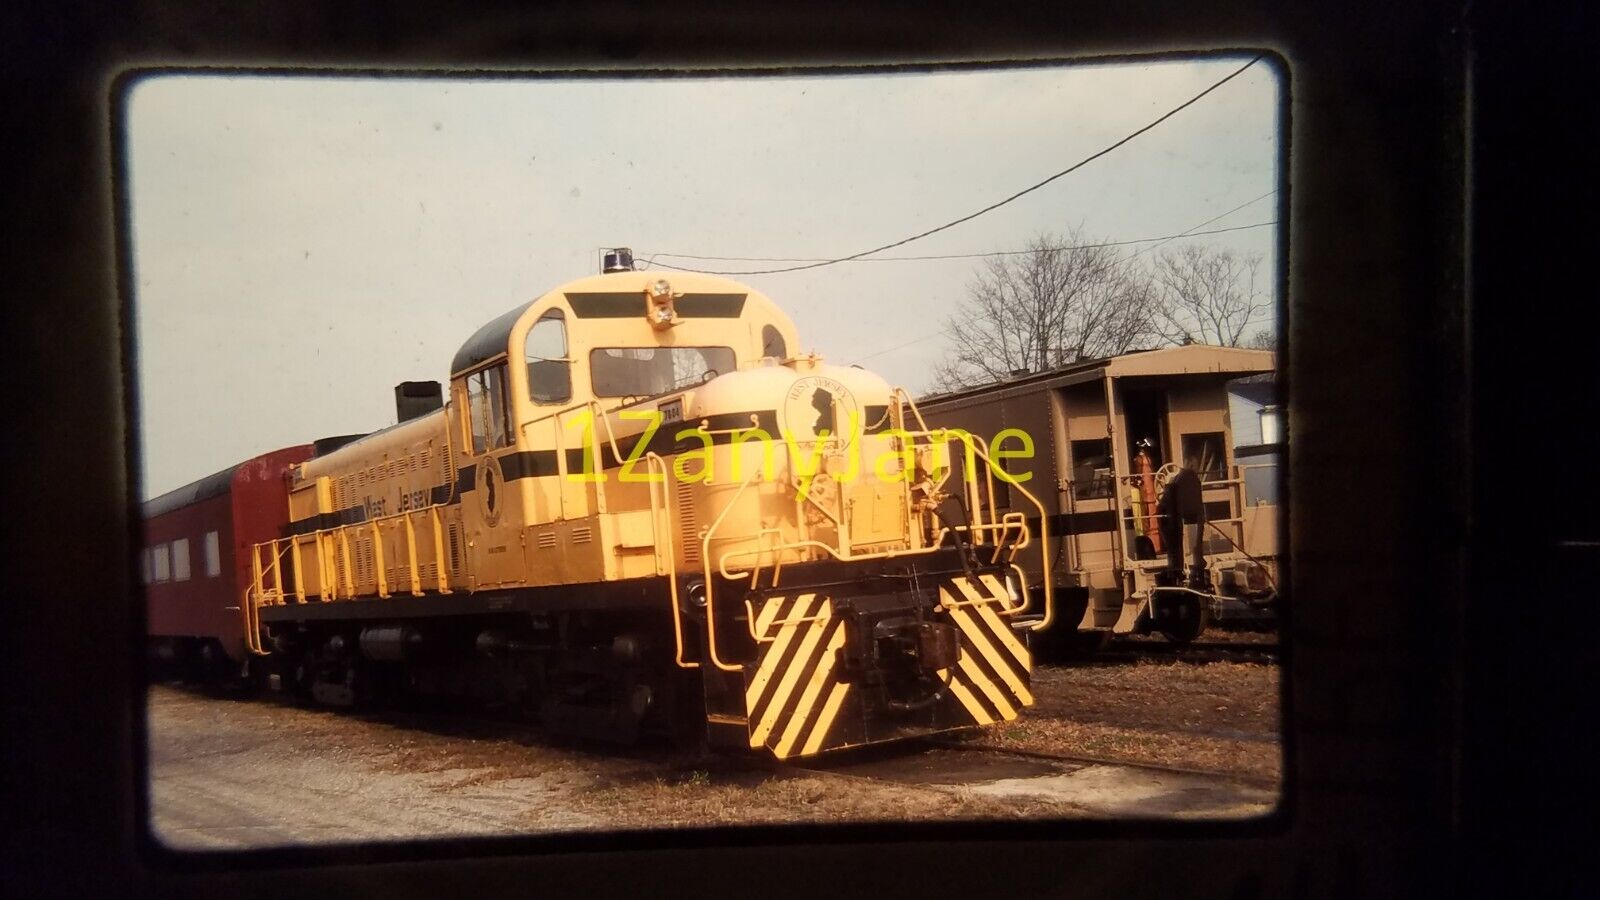 OU06 TRAIN ENGINE LOCOMOTIVE 35MM SLIDE WJSL 7804, SALEM, NJ 1991